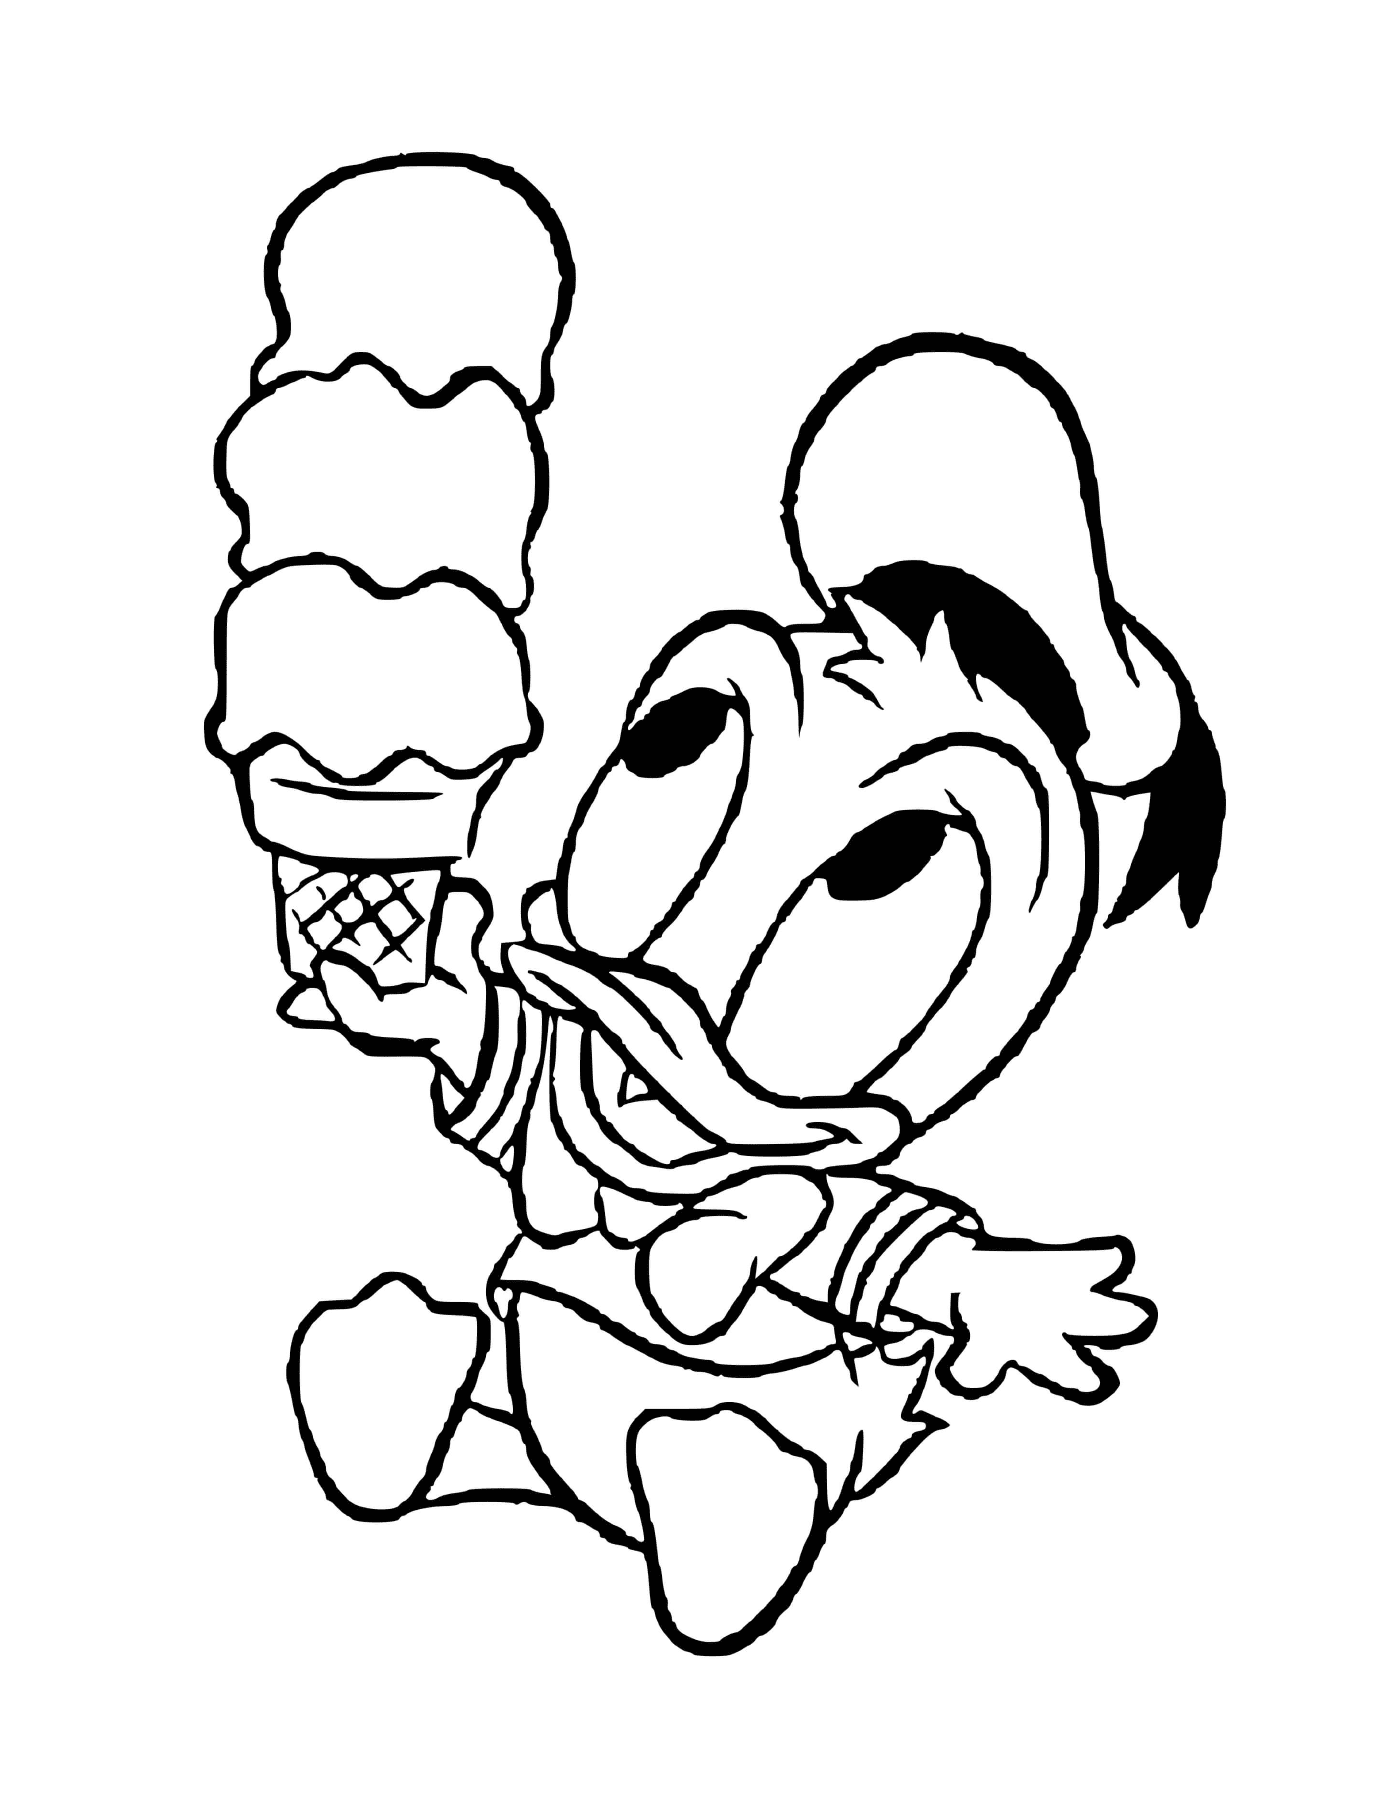  Donald Duck bambino ama il gelato 